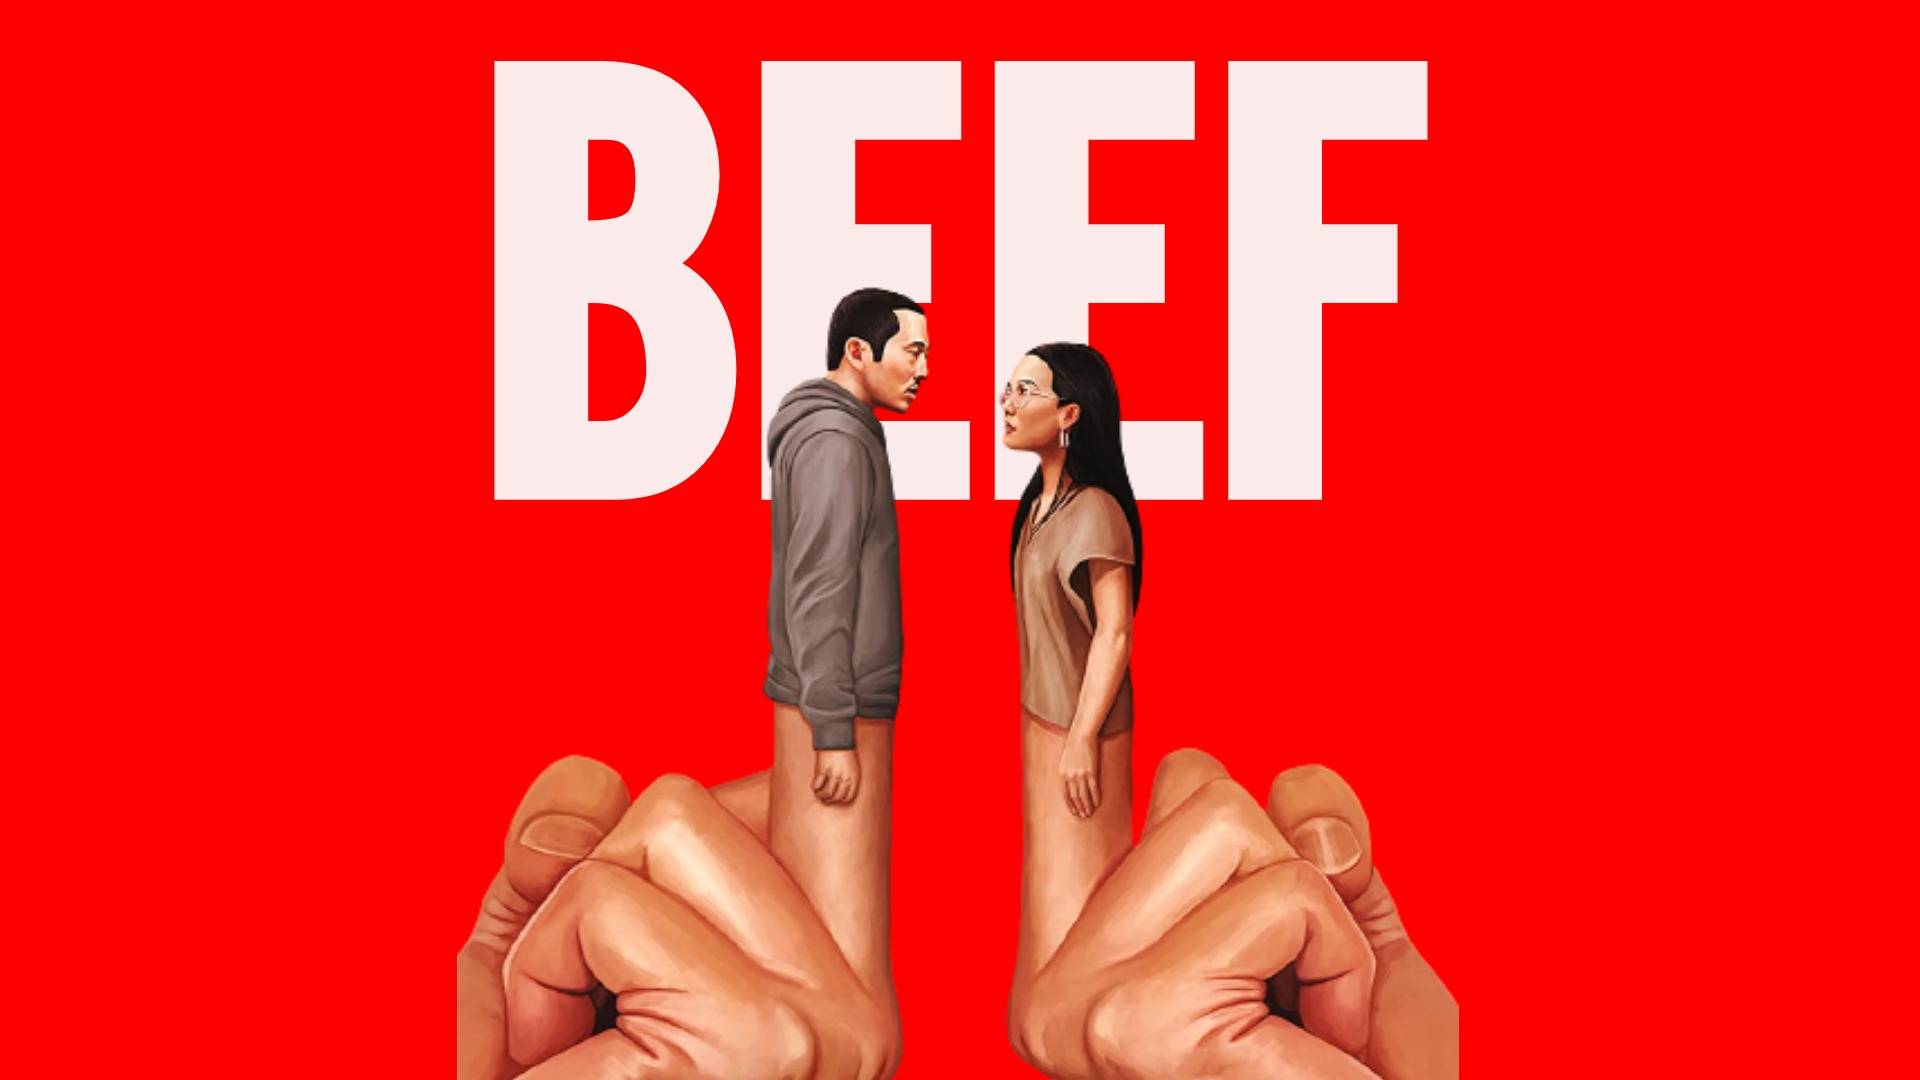 Beef netflix sex scenes